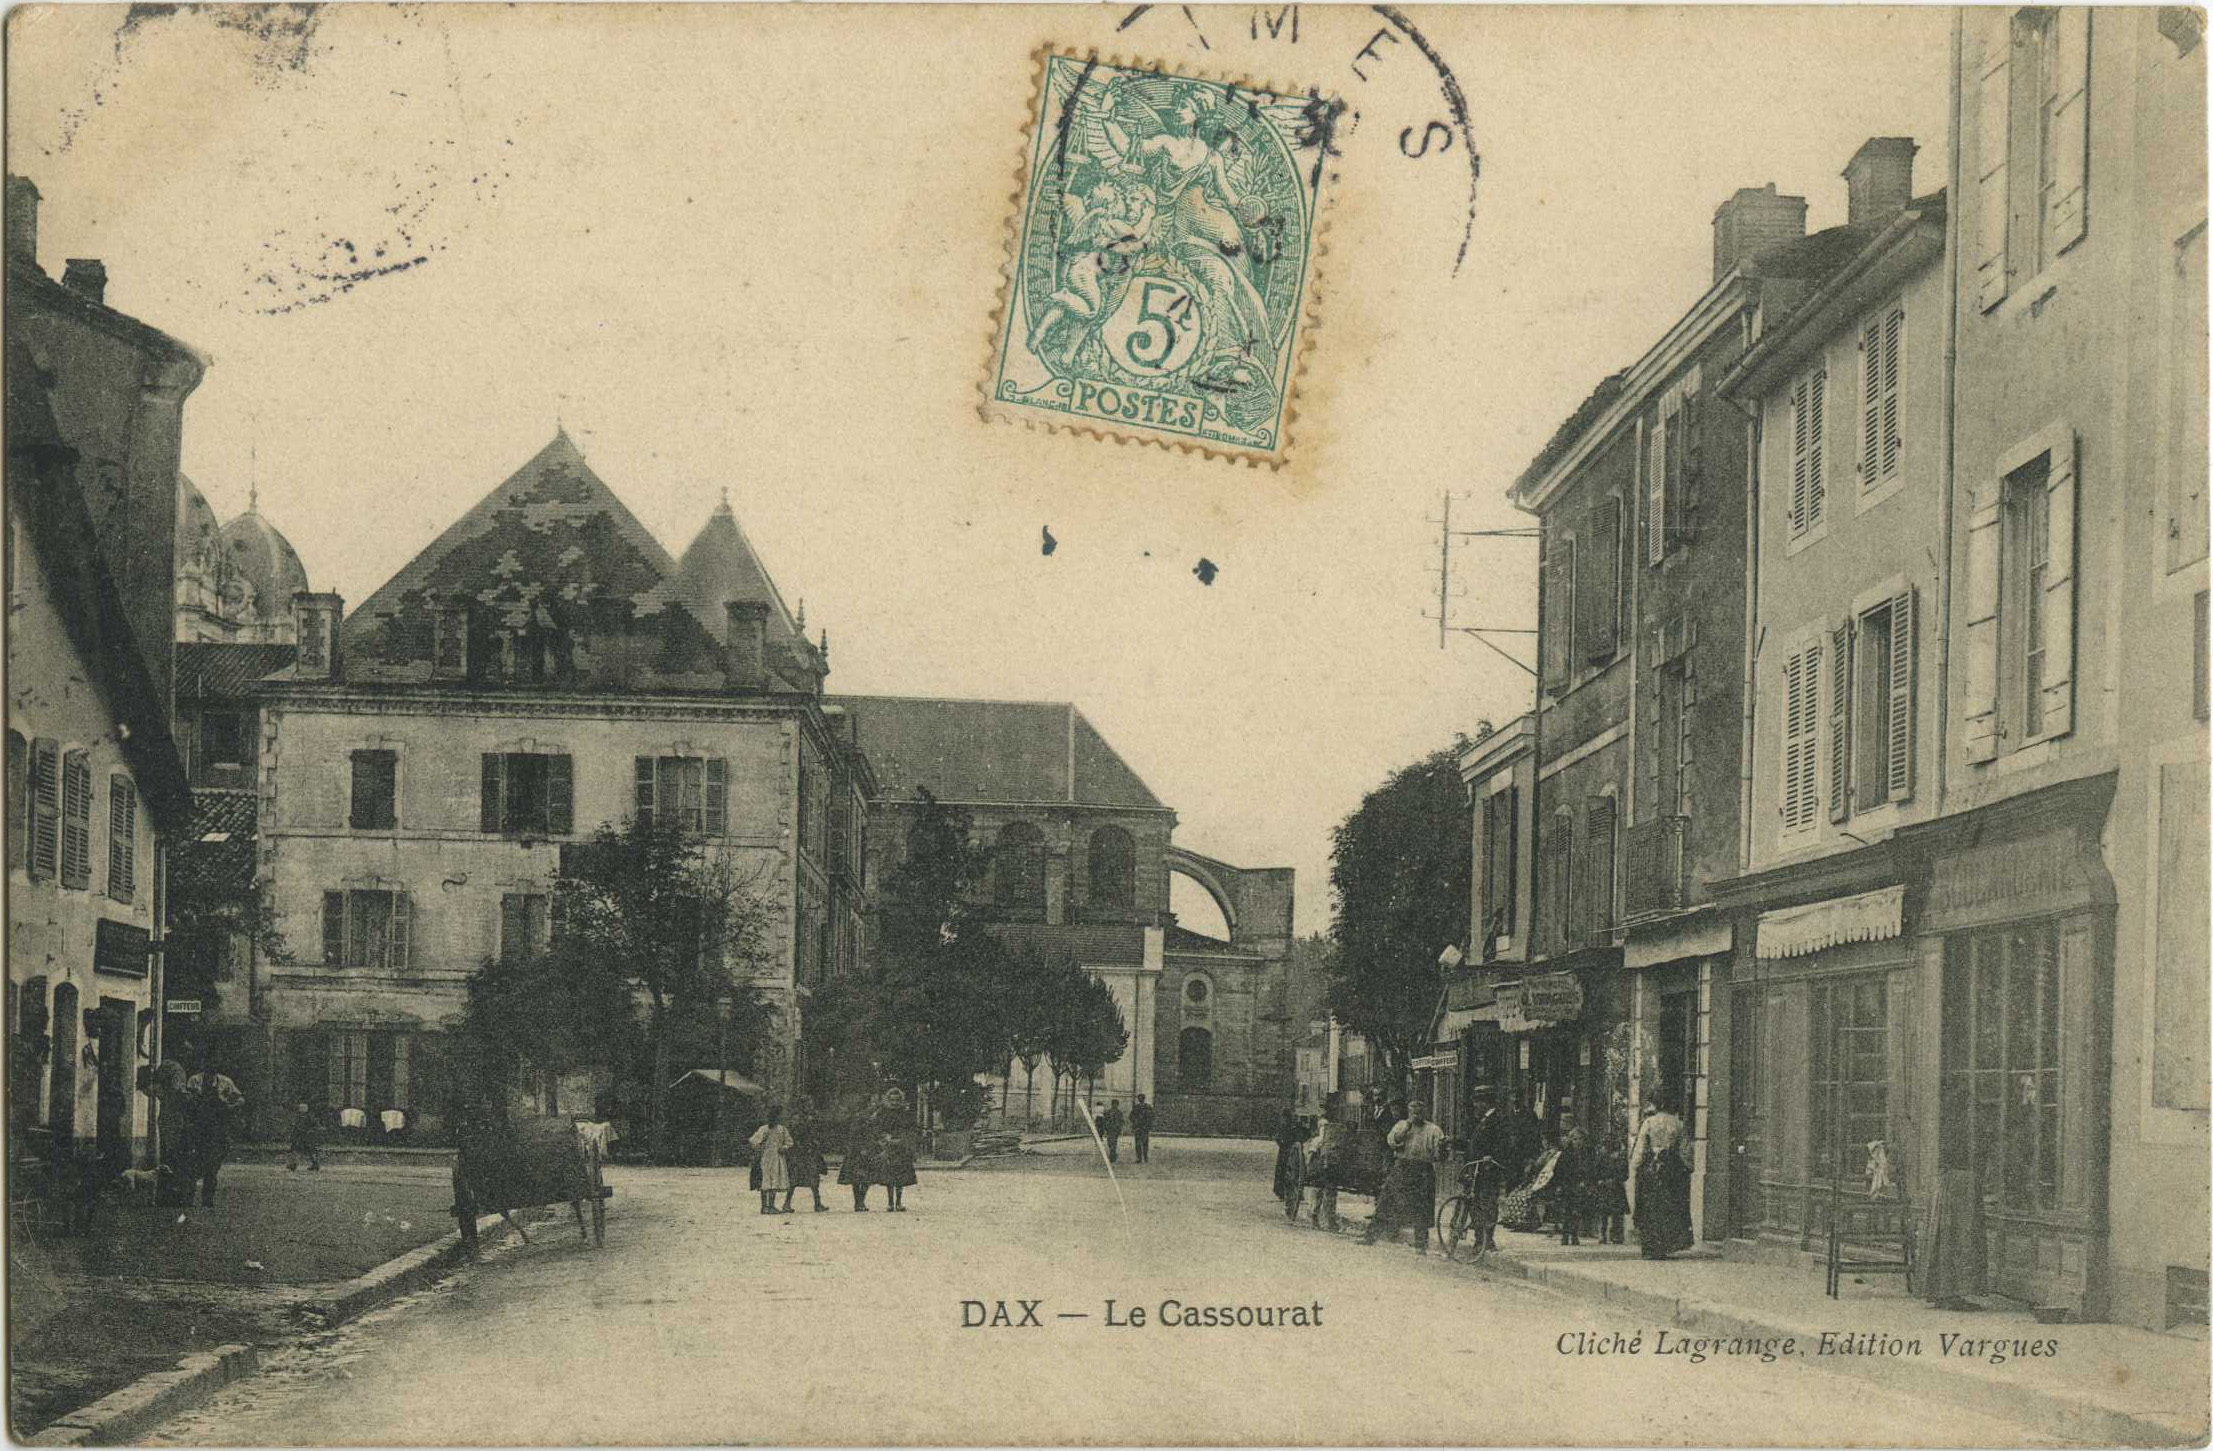 Dax - Le Cassourat